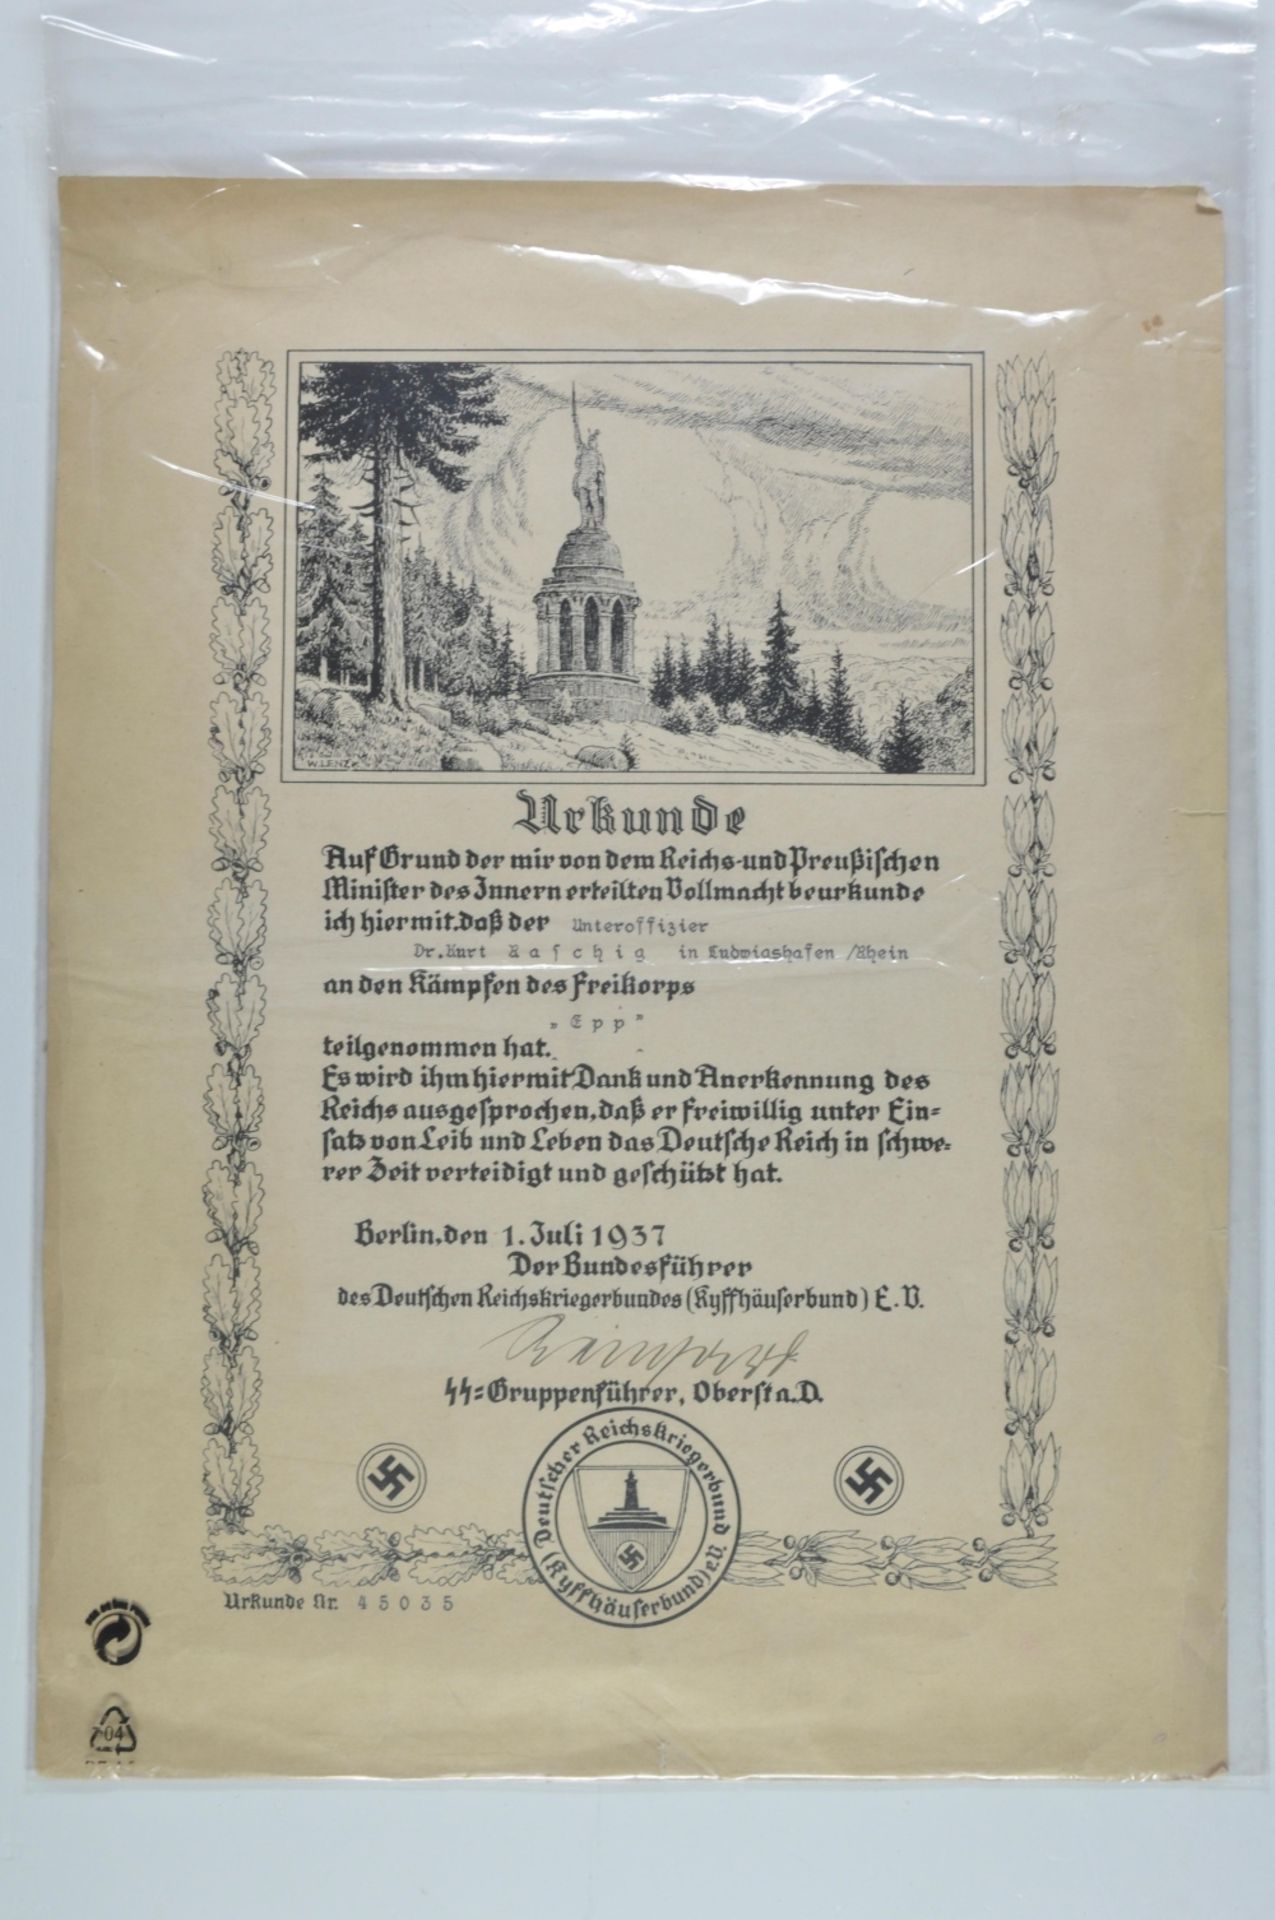 Großformatige Urkunde für die Teilnahme an den Kämpfen des Freikorps Ritter von Epp, datiert Berlin